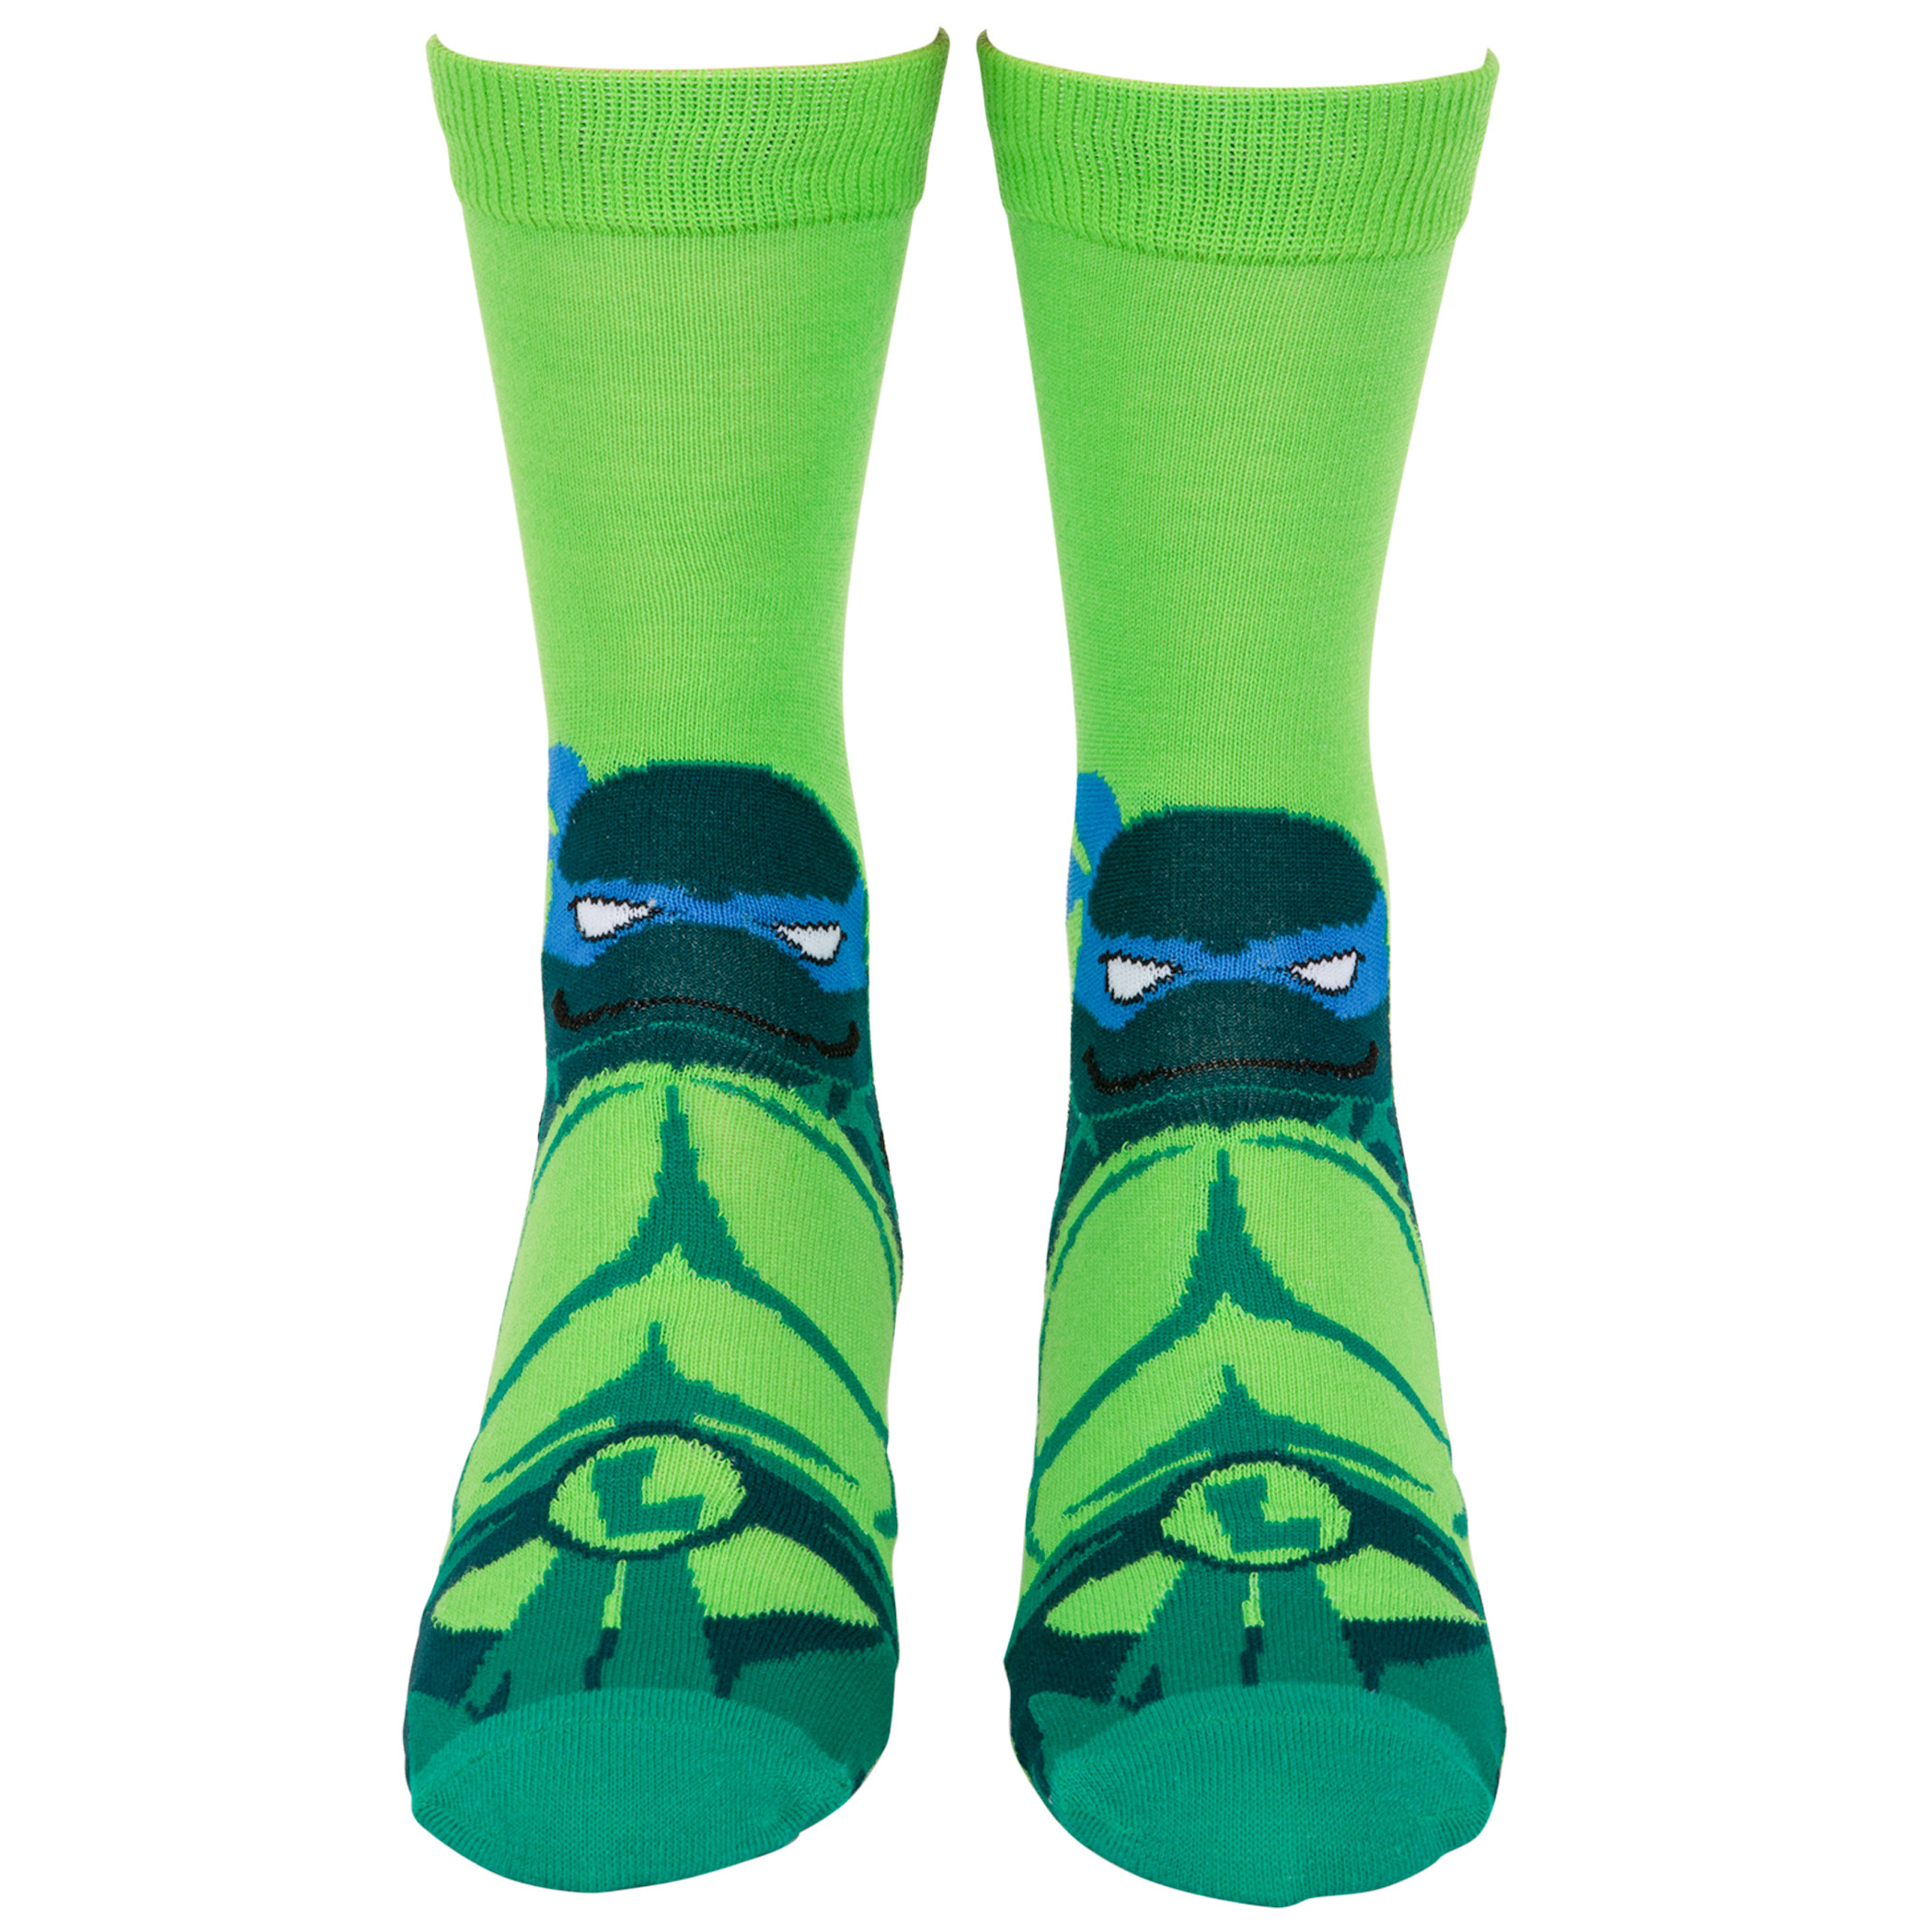 Teenage Mutant Ninja Turtles Leo and Mikey Crew Socks 2-Pack